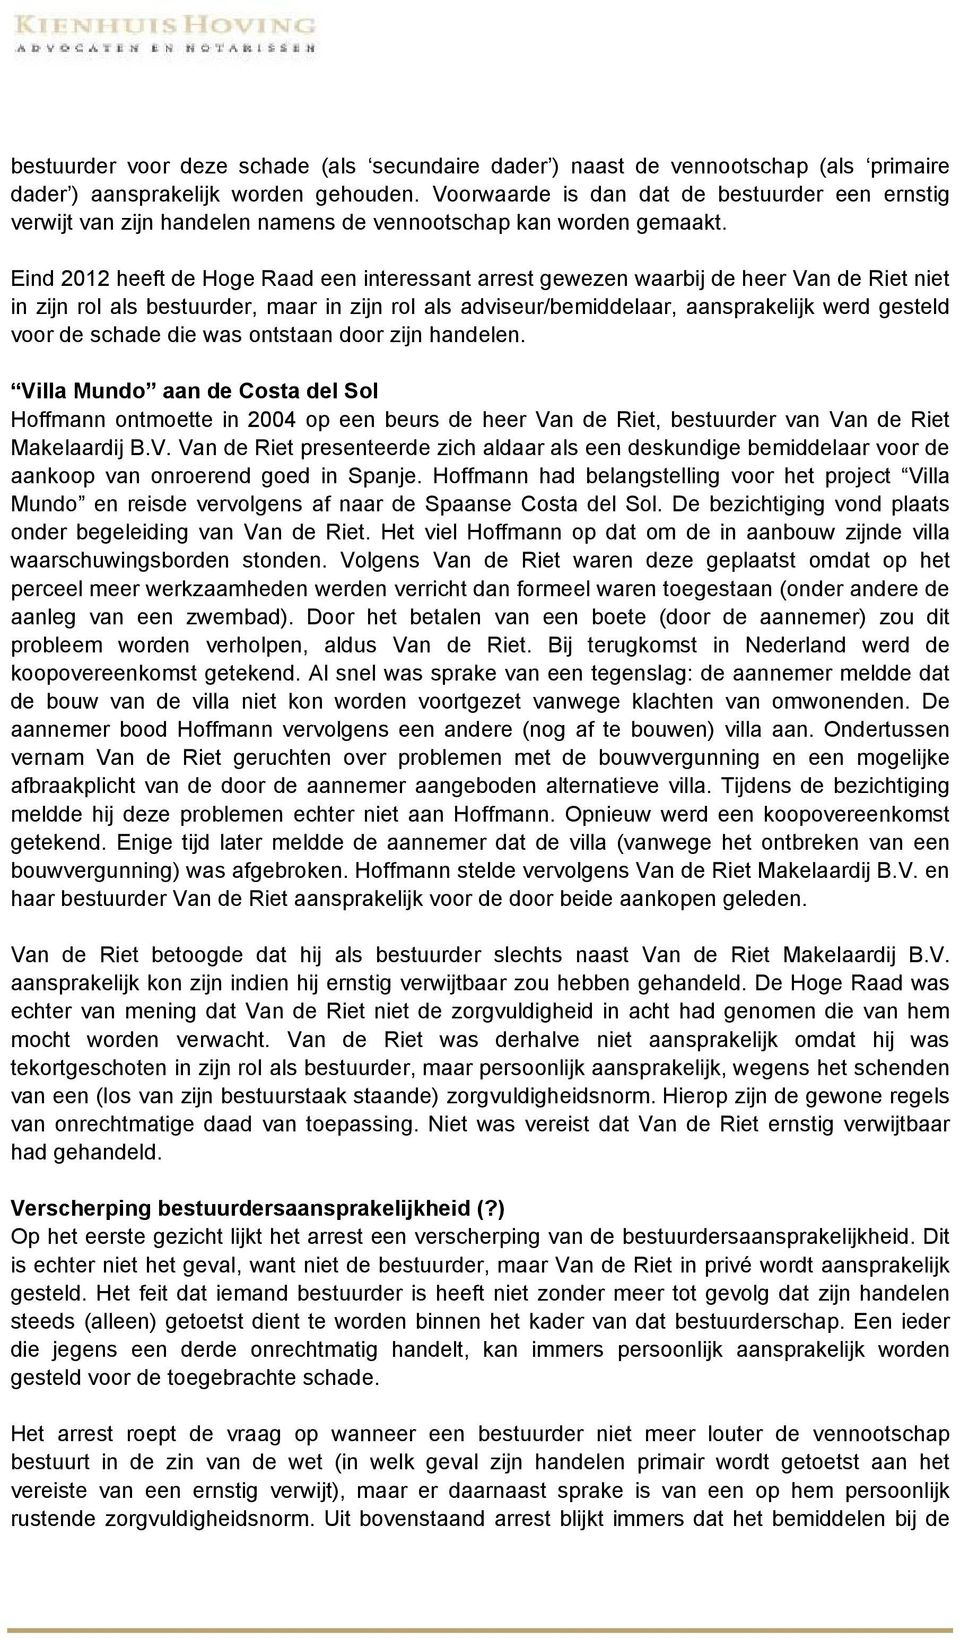 Eind 2012 heeft de Hoge Raad een interessant arrest gewezen waarbij de heer Van de Riet niet in zijn rol als bestuurder, maar in zijn rol als adviseur/bemiddelaar, aansprakelijk werd gesteld voor de